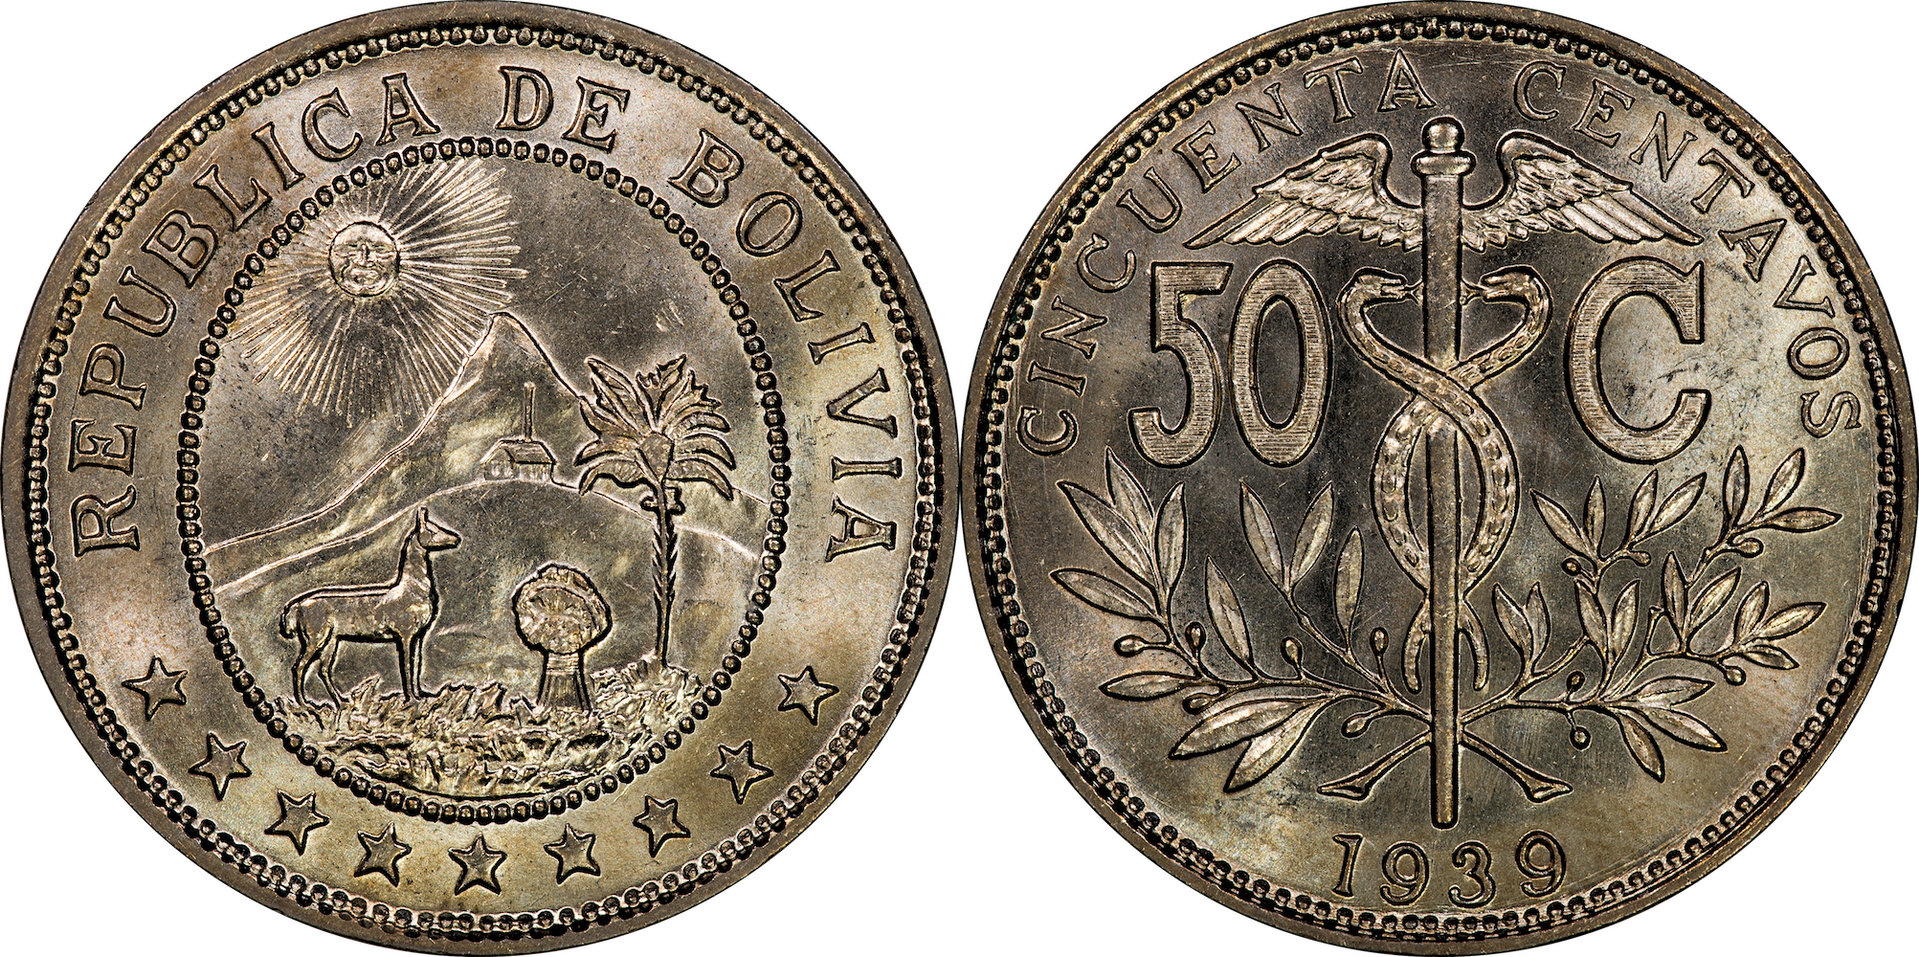 Bolivia - 1939 50 Centavos.jpg